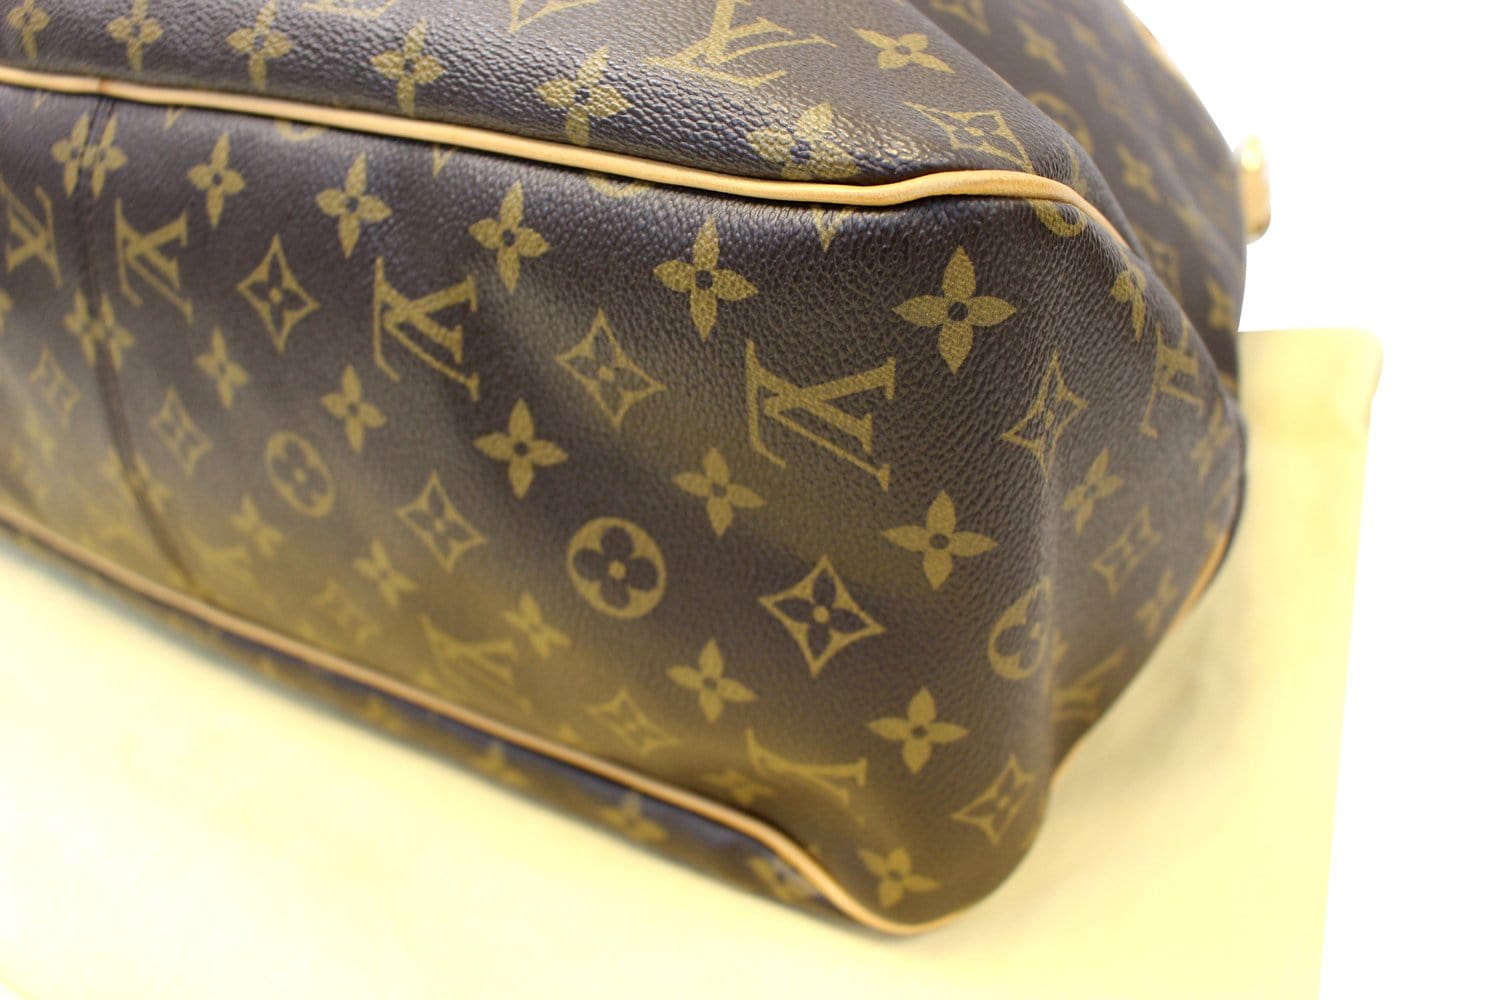 Louis Vuitton Pre-owned Women's Shoulder Bag